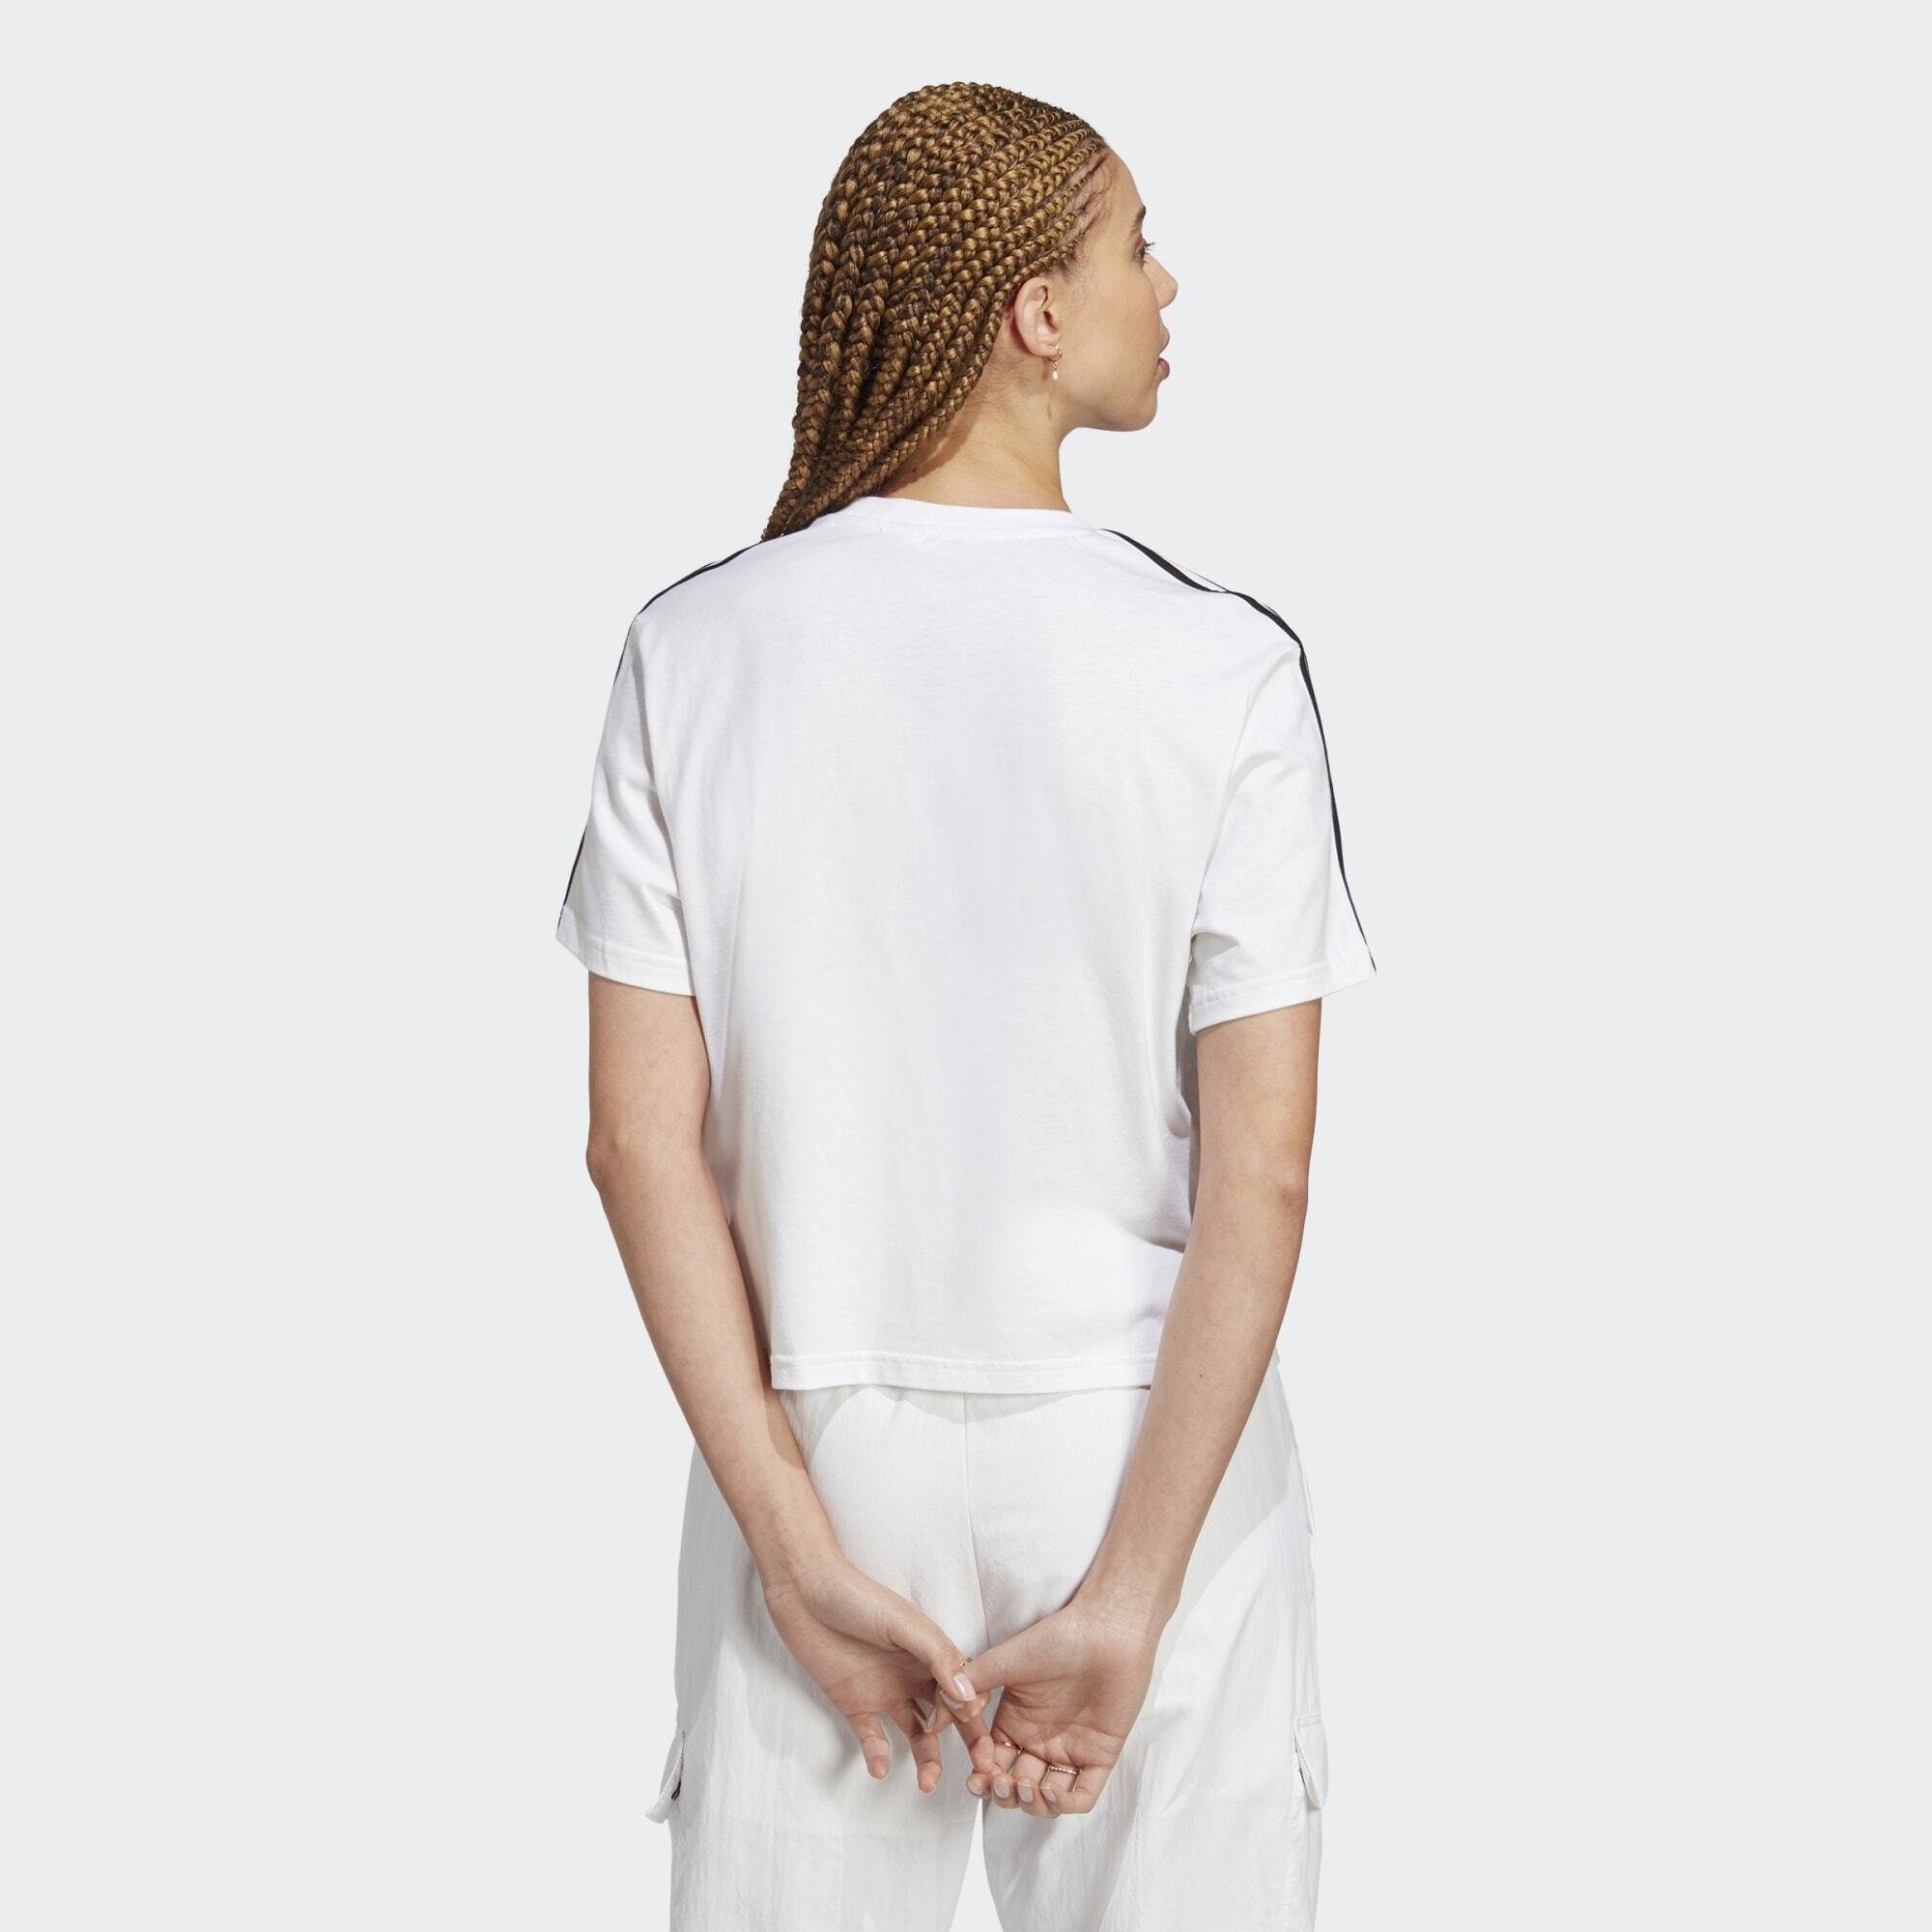 / CROP-TOP JERSEY Black Sportswear adidas SINGLE White T-Shirt 3-STREIFEN ESSENTIALS